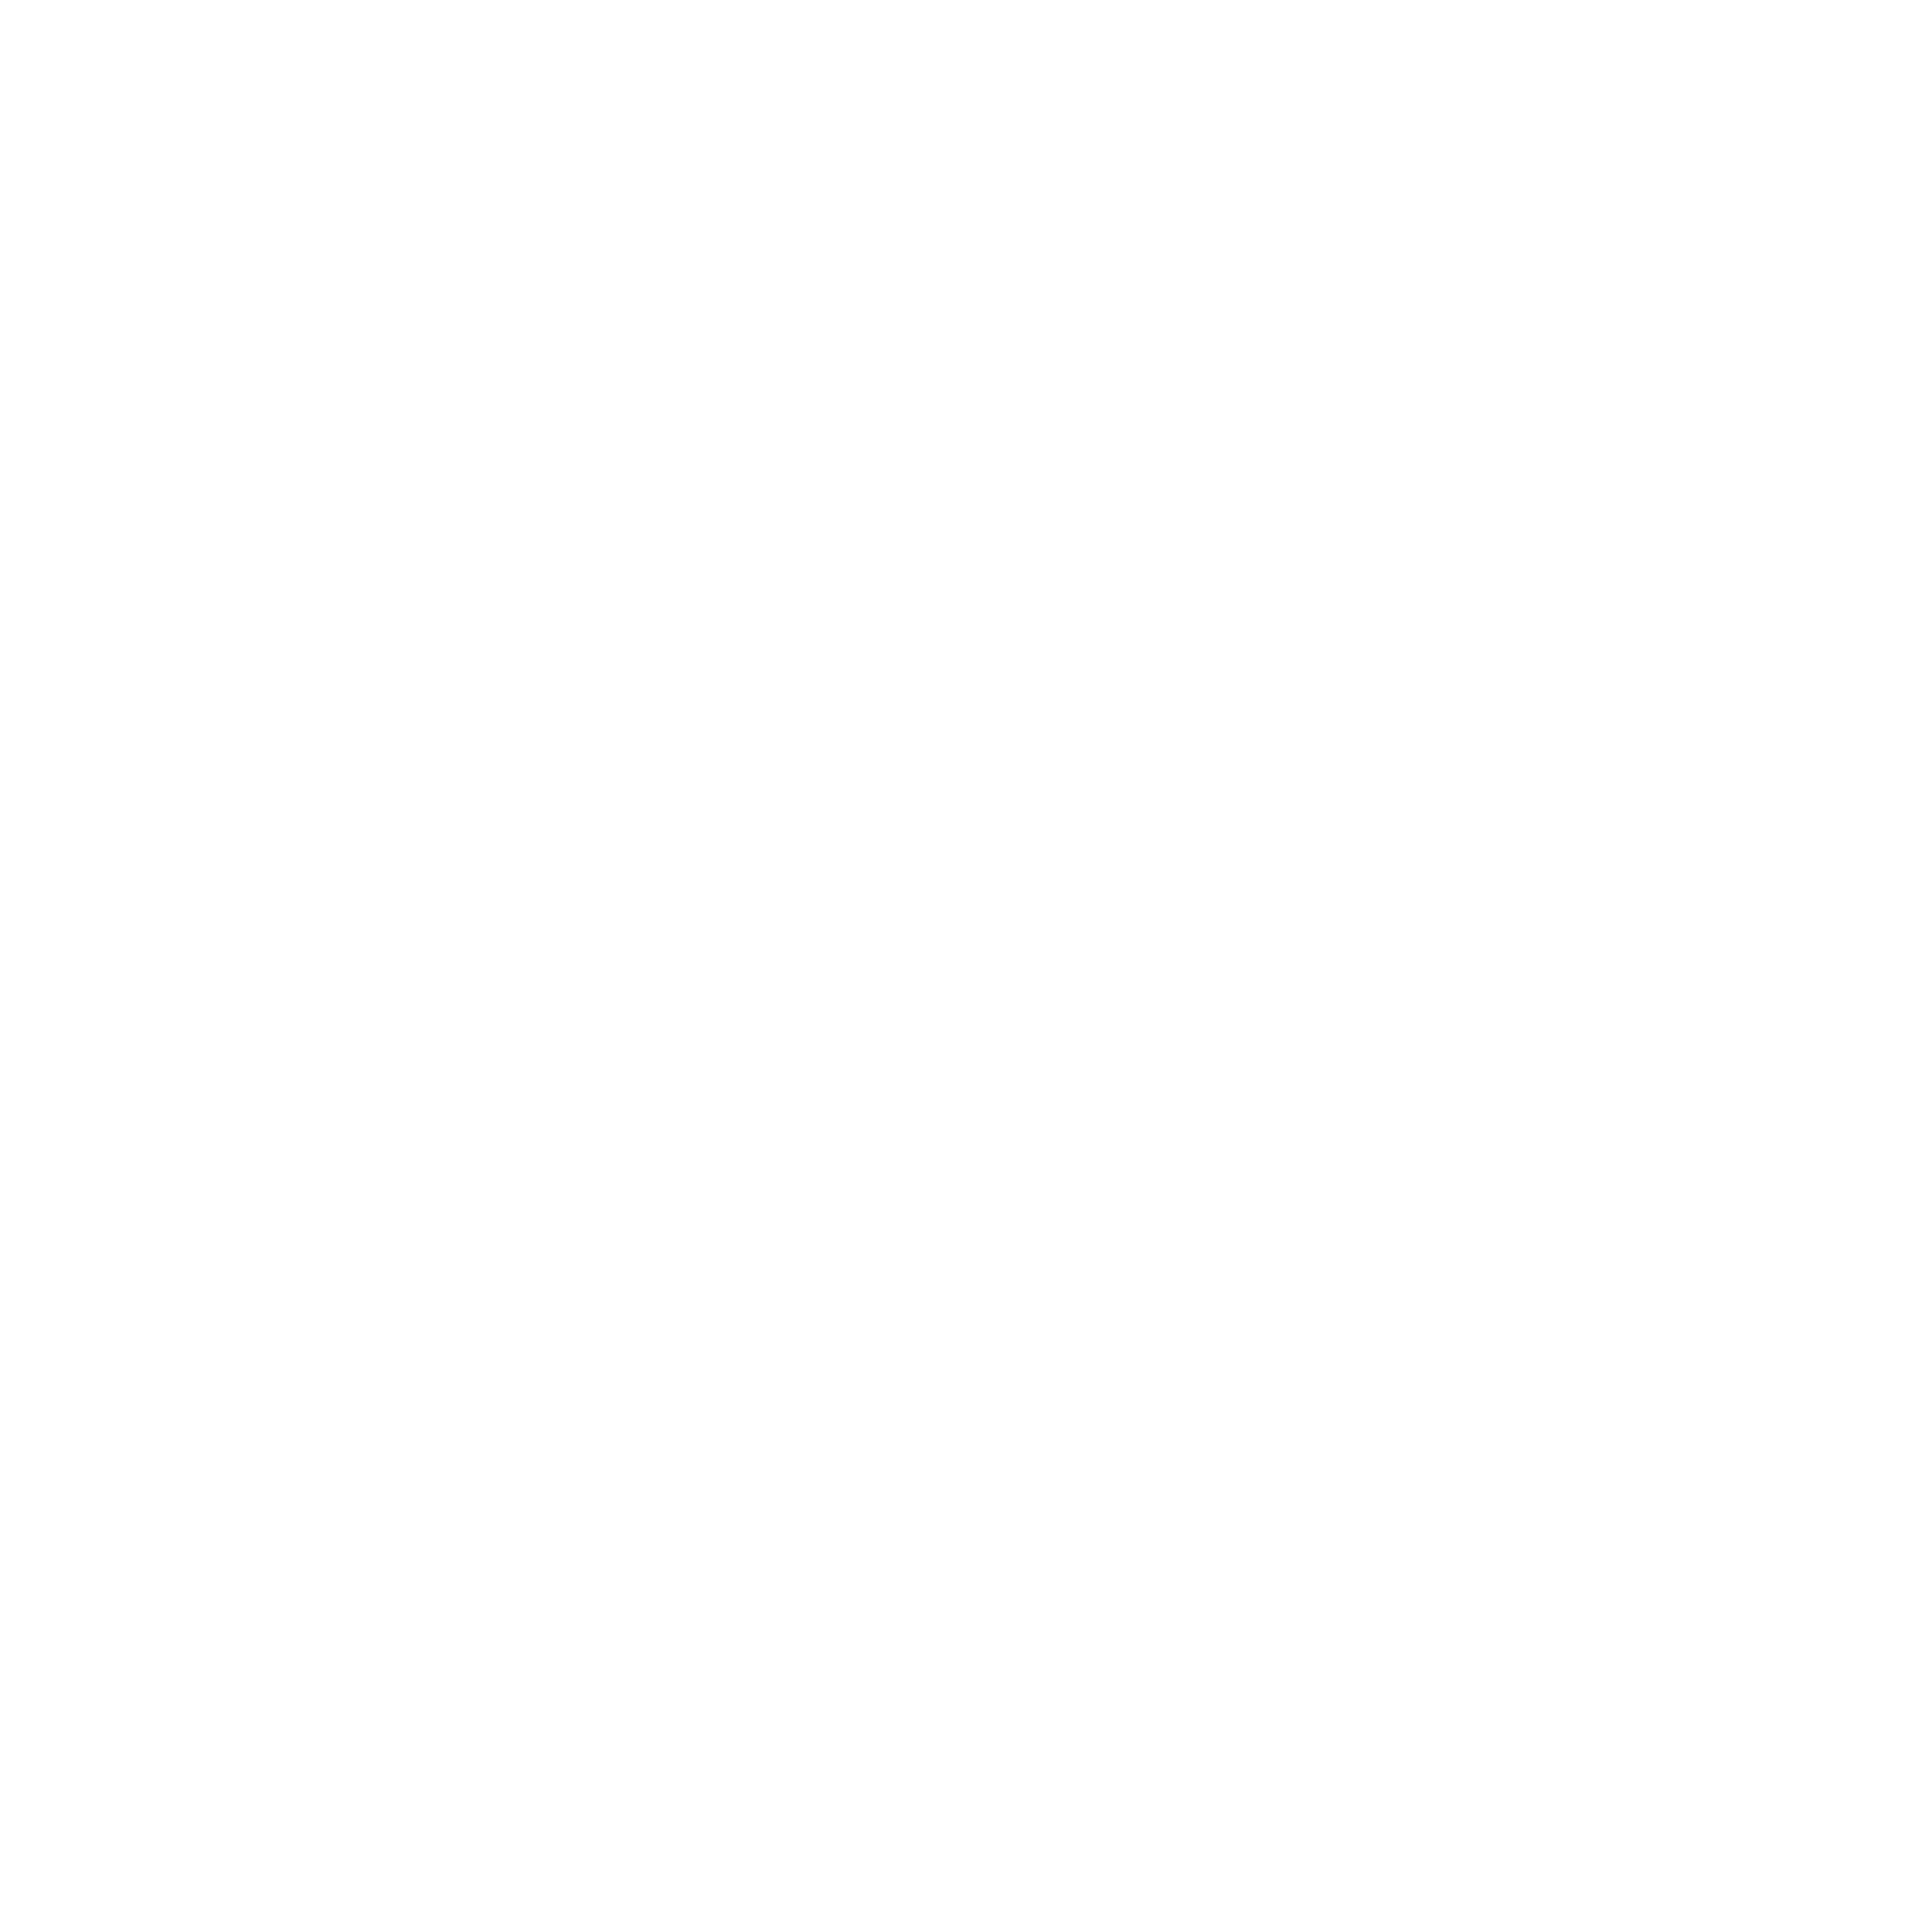 Lontyle Apps & Games